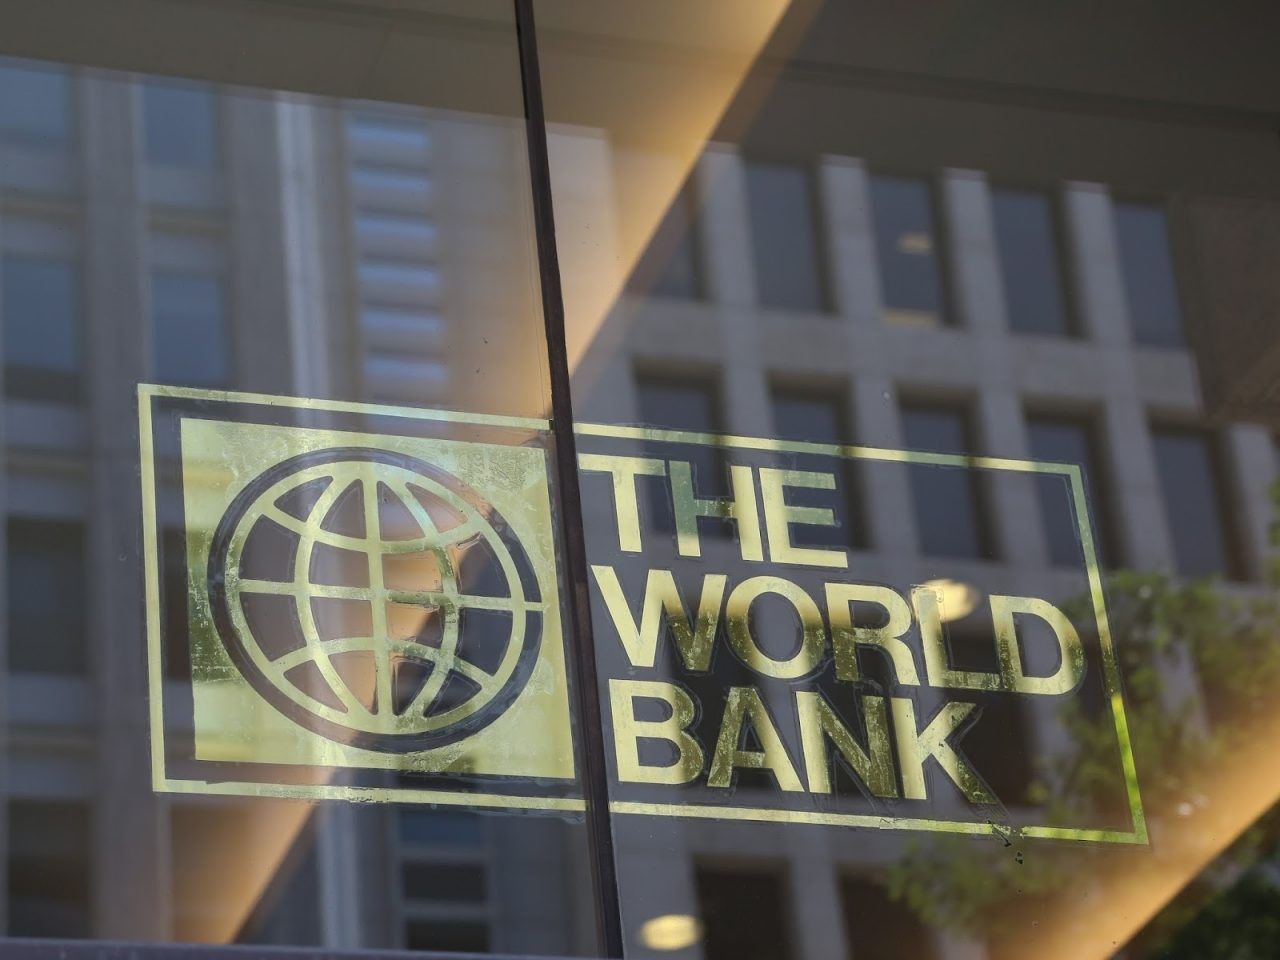 Համաշխարհային հաշվեդրույքների բարձրացումը 2023թ. կարող է ռեցեսիա առաջացնել. Համաշխարհային բանկ